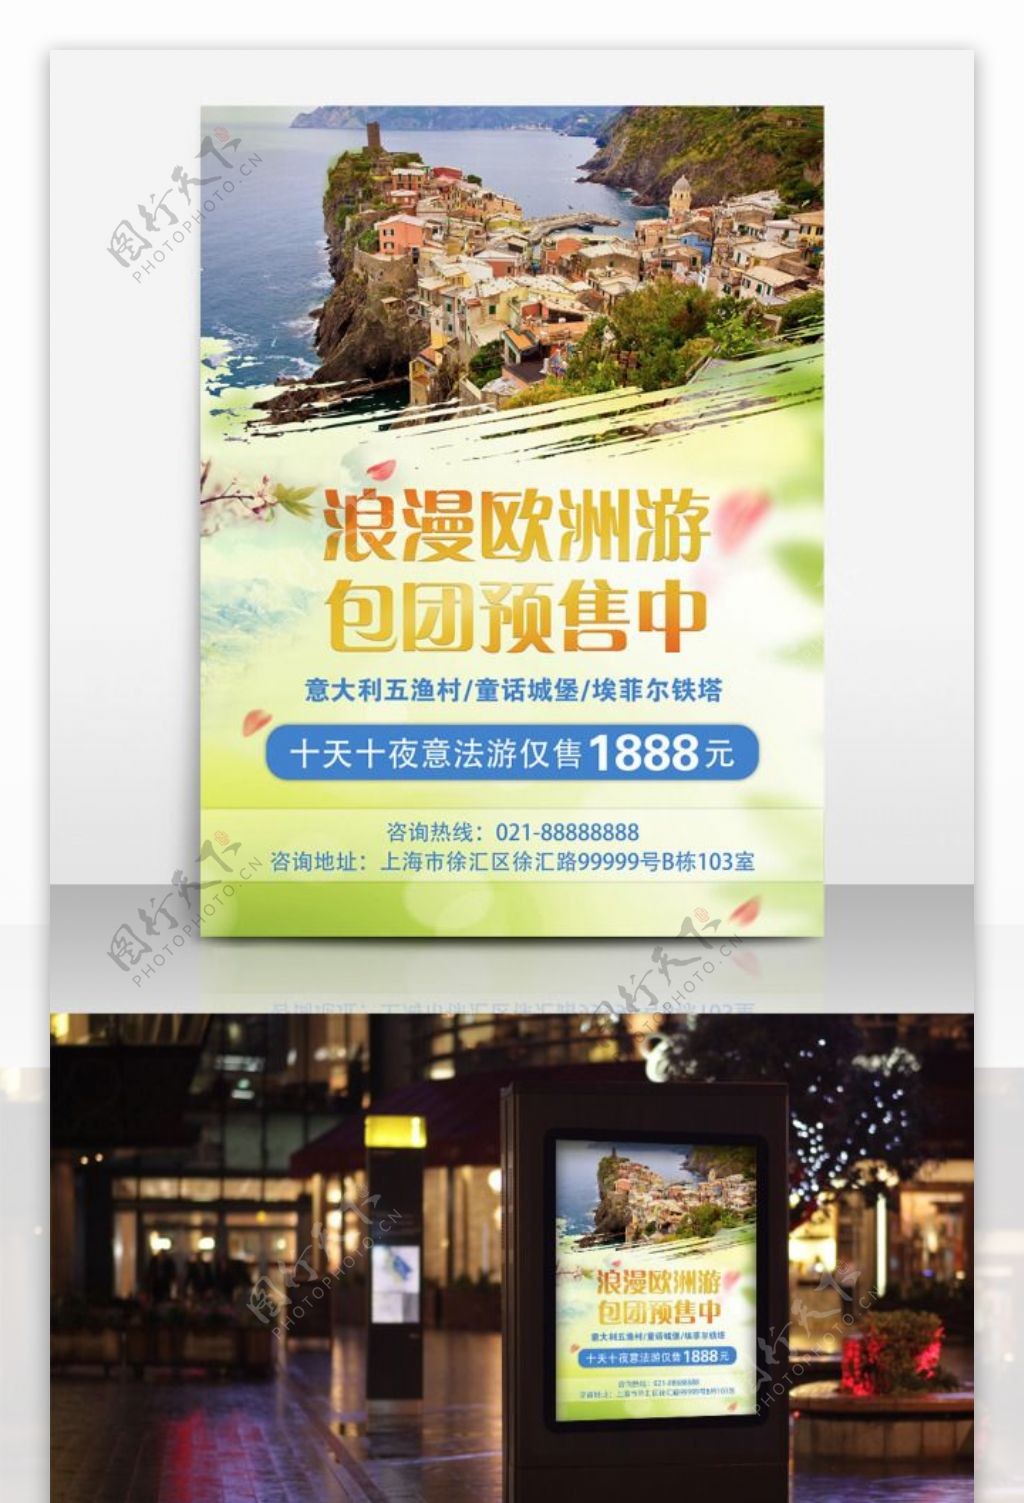 黄绿色浪漫清新旅行社推广宣传海报欧洲旅游宣传dm单页